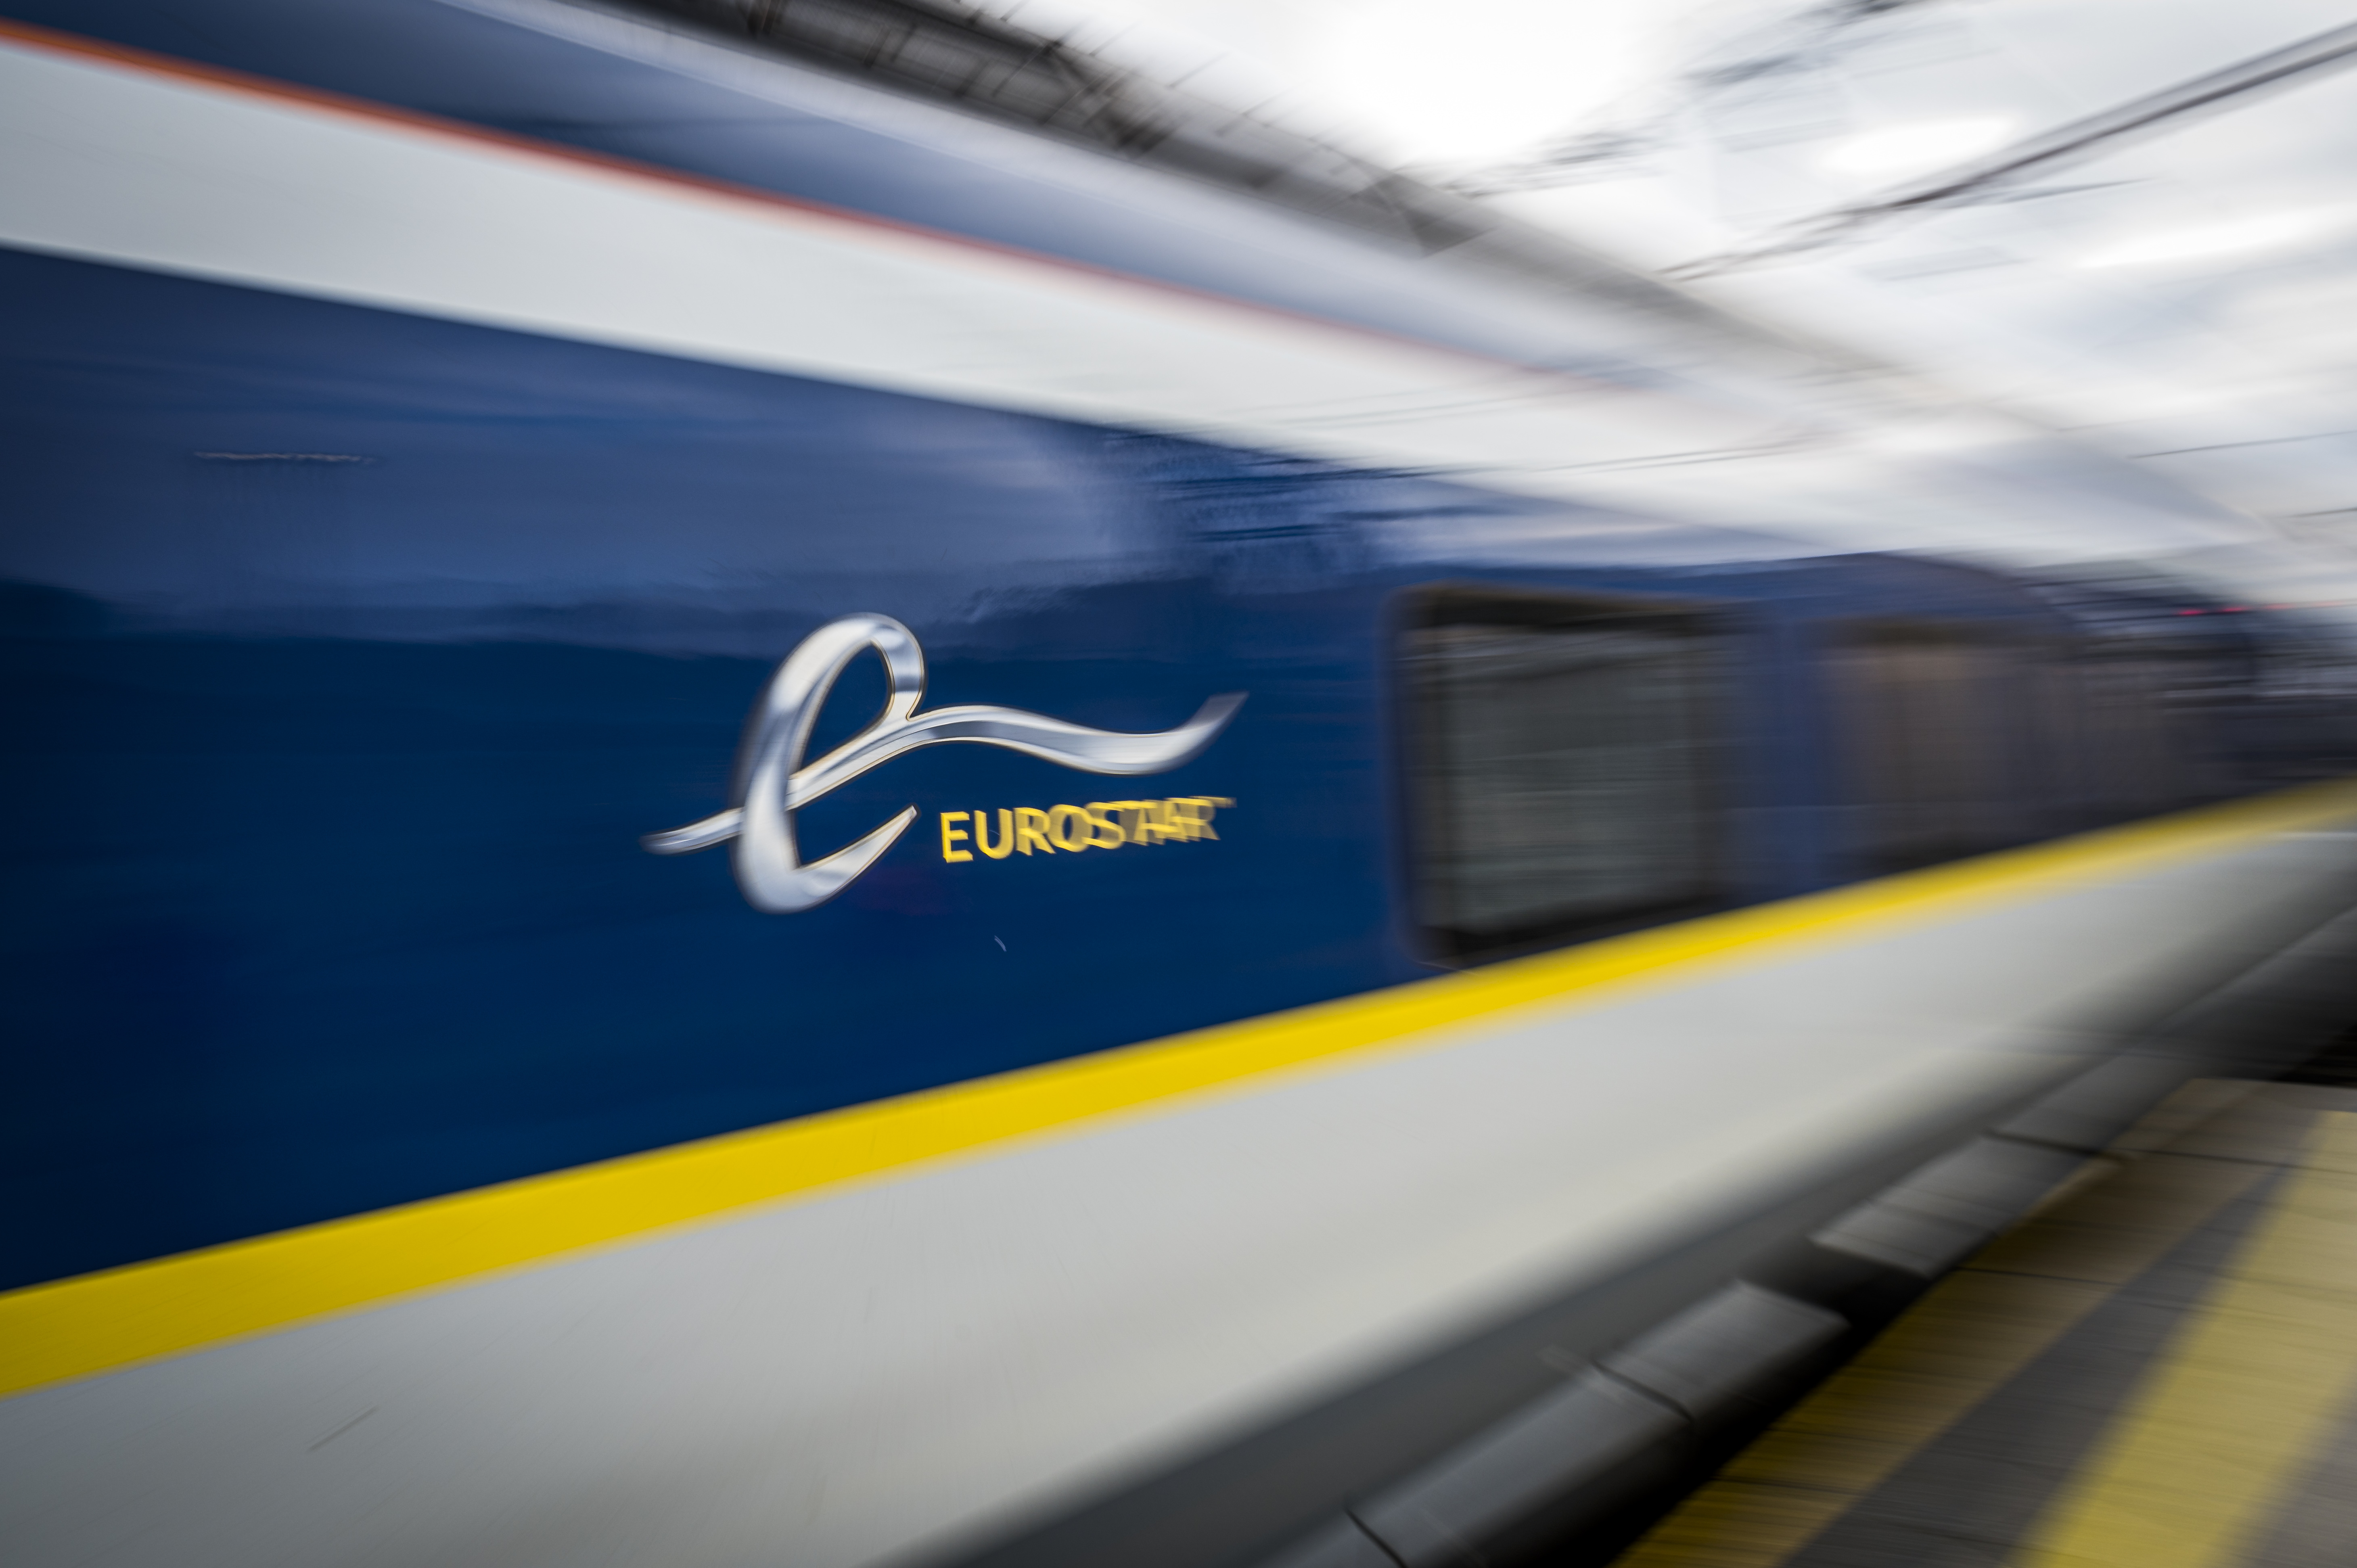 La marque Thalys disparaît après la fusion avec Eurostar